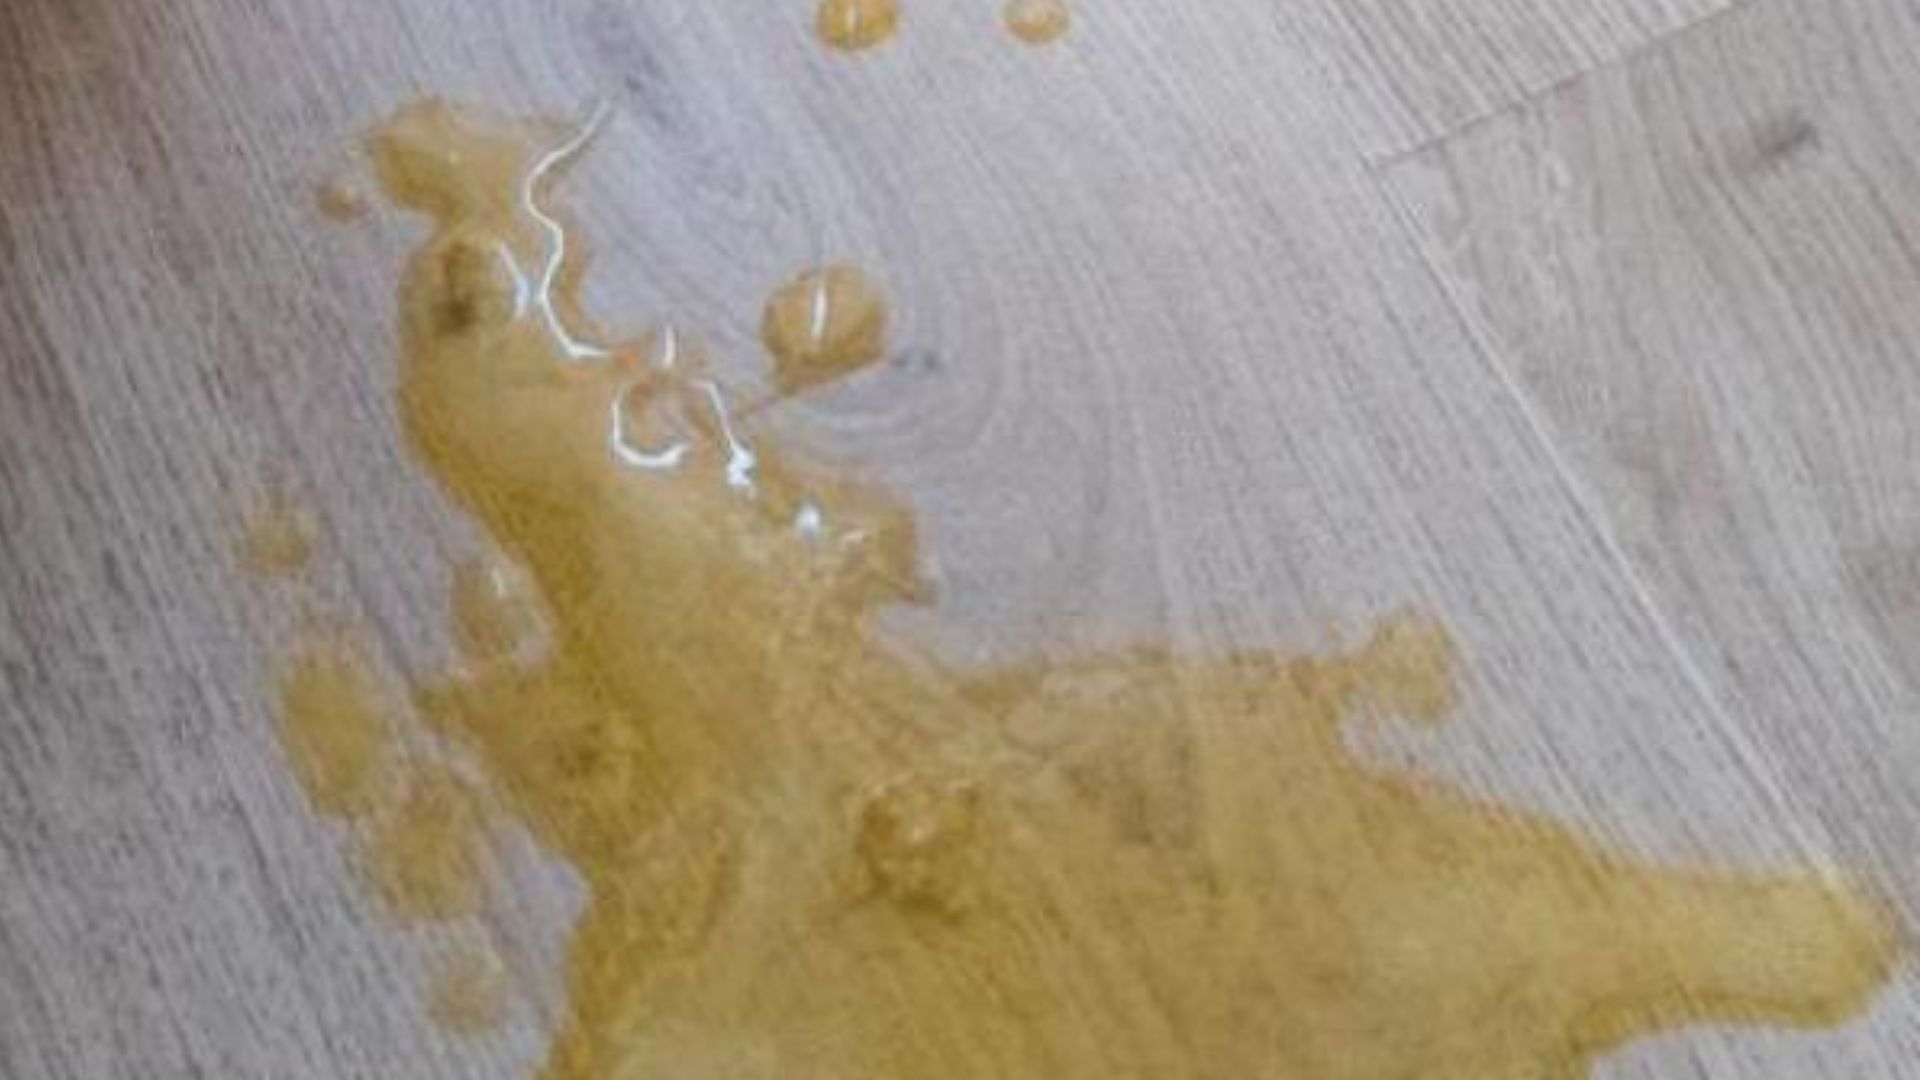 Liquid On Wooden Floor